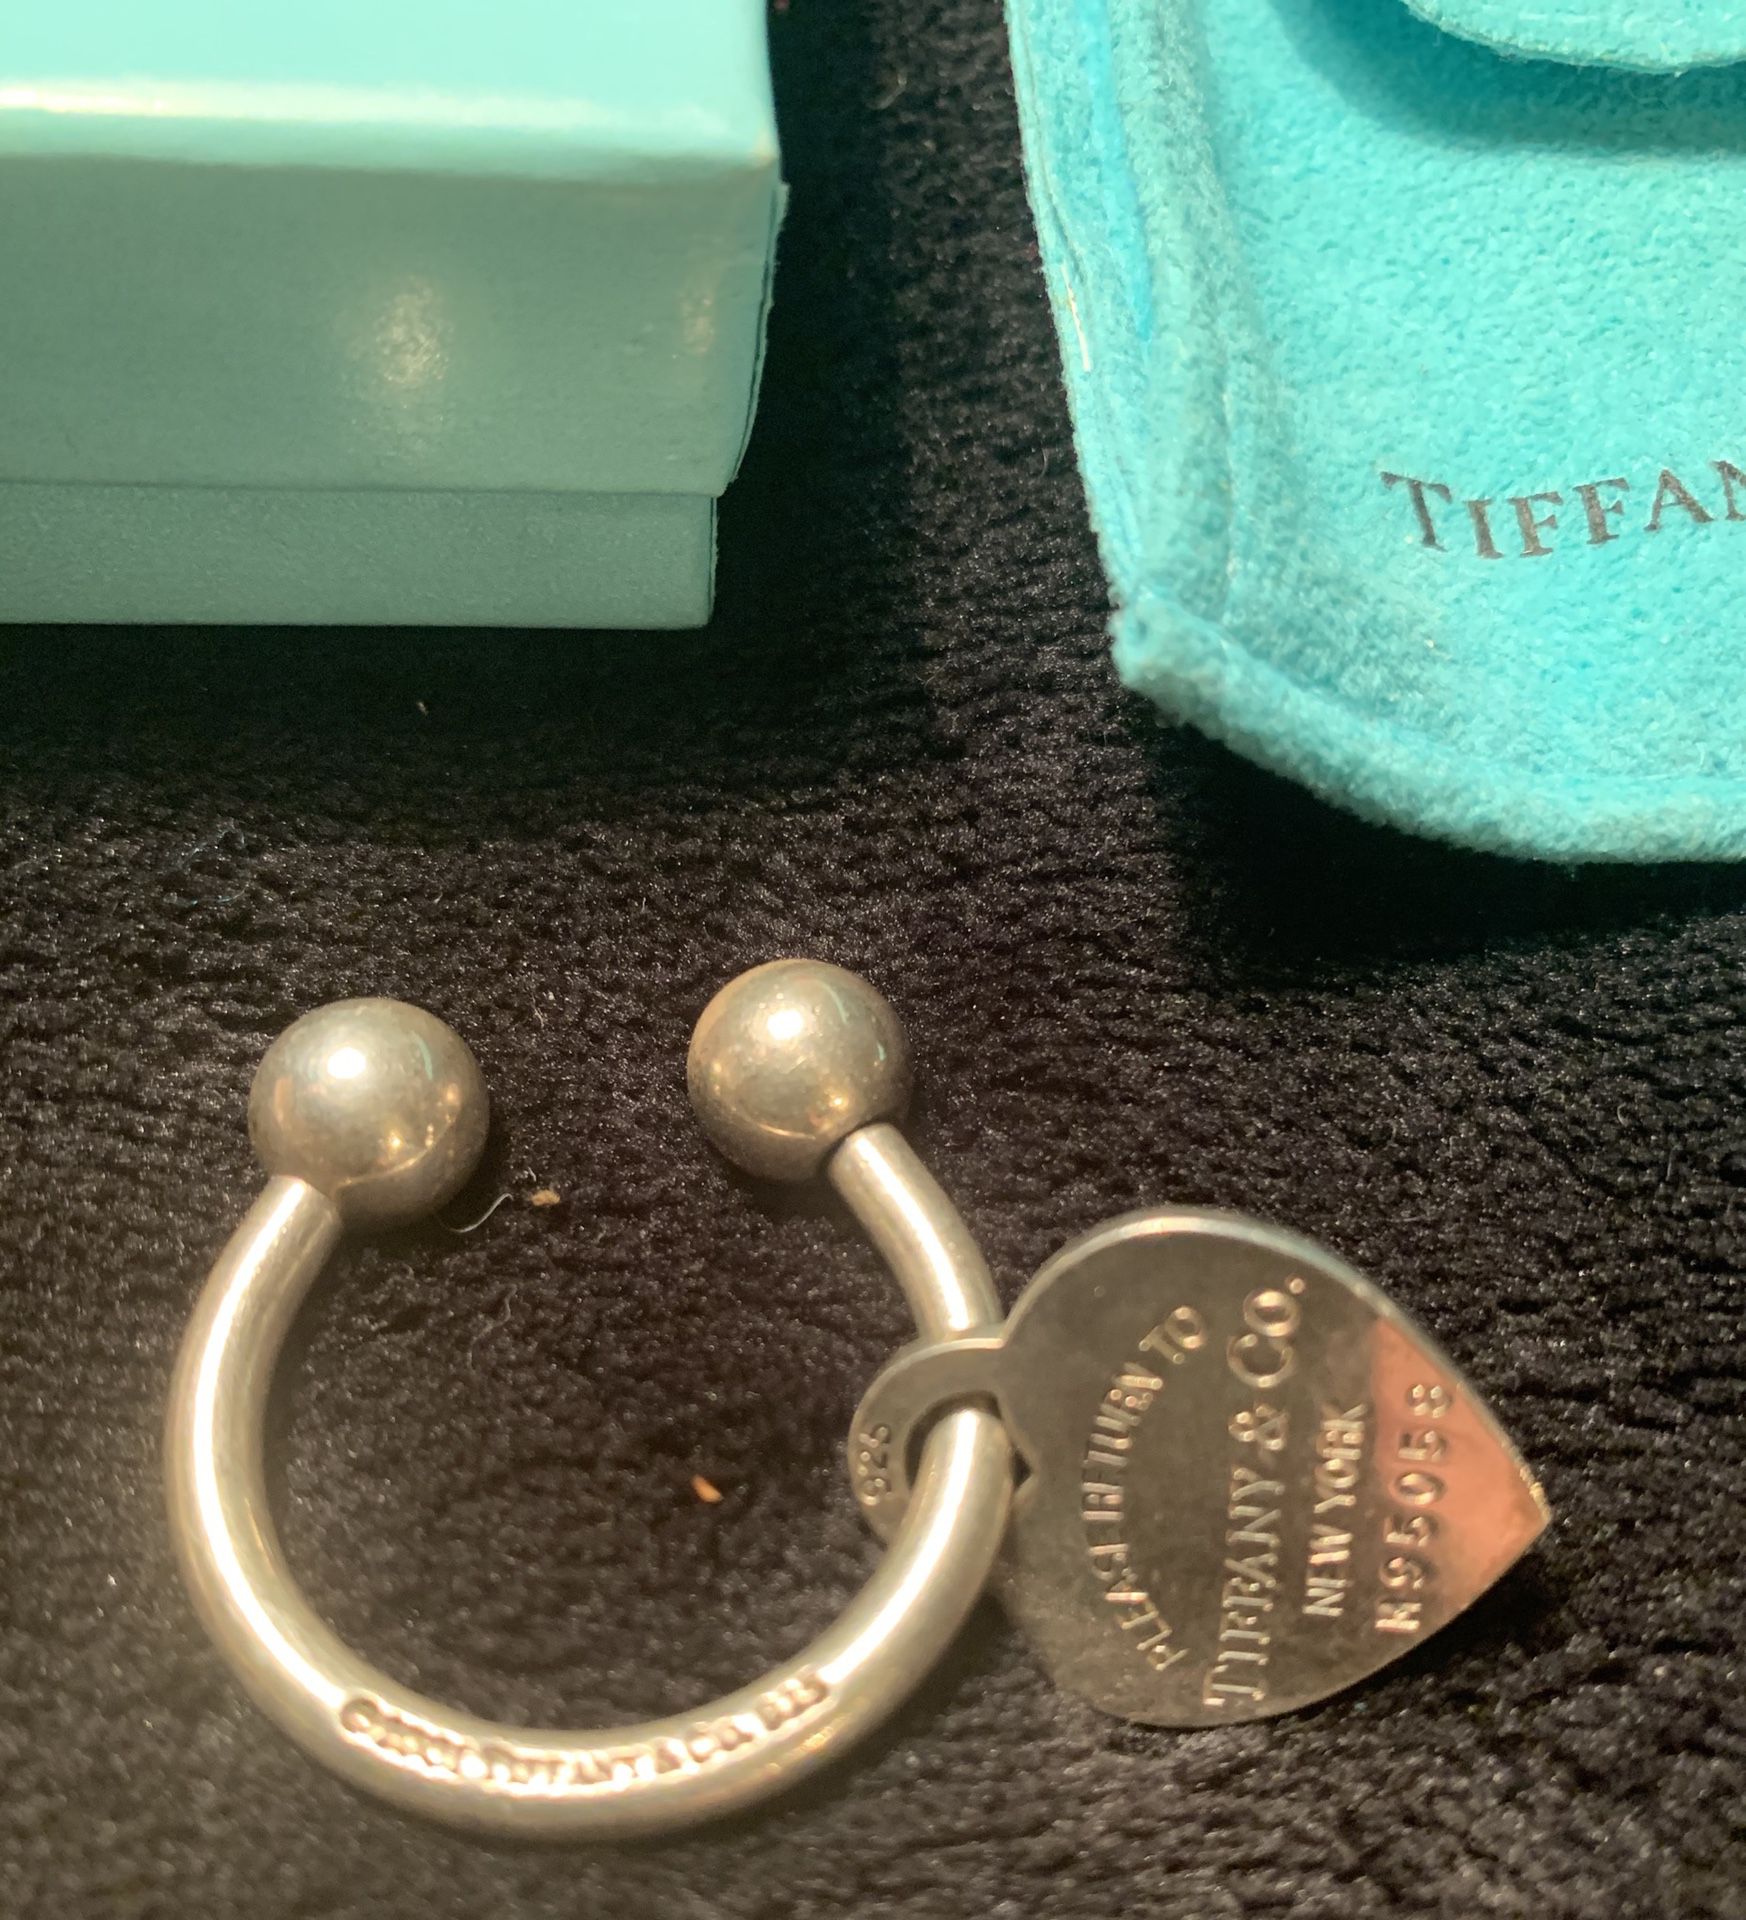 22g. Tiffany & Co. Horseshoe Sterling Silver 925 Key Chain Key Ring W/ Bag & Box